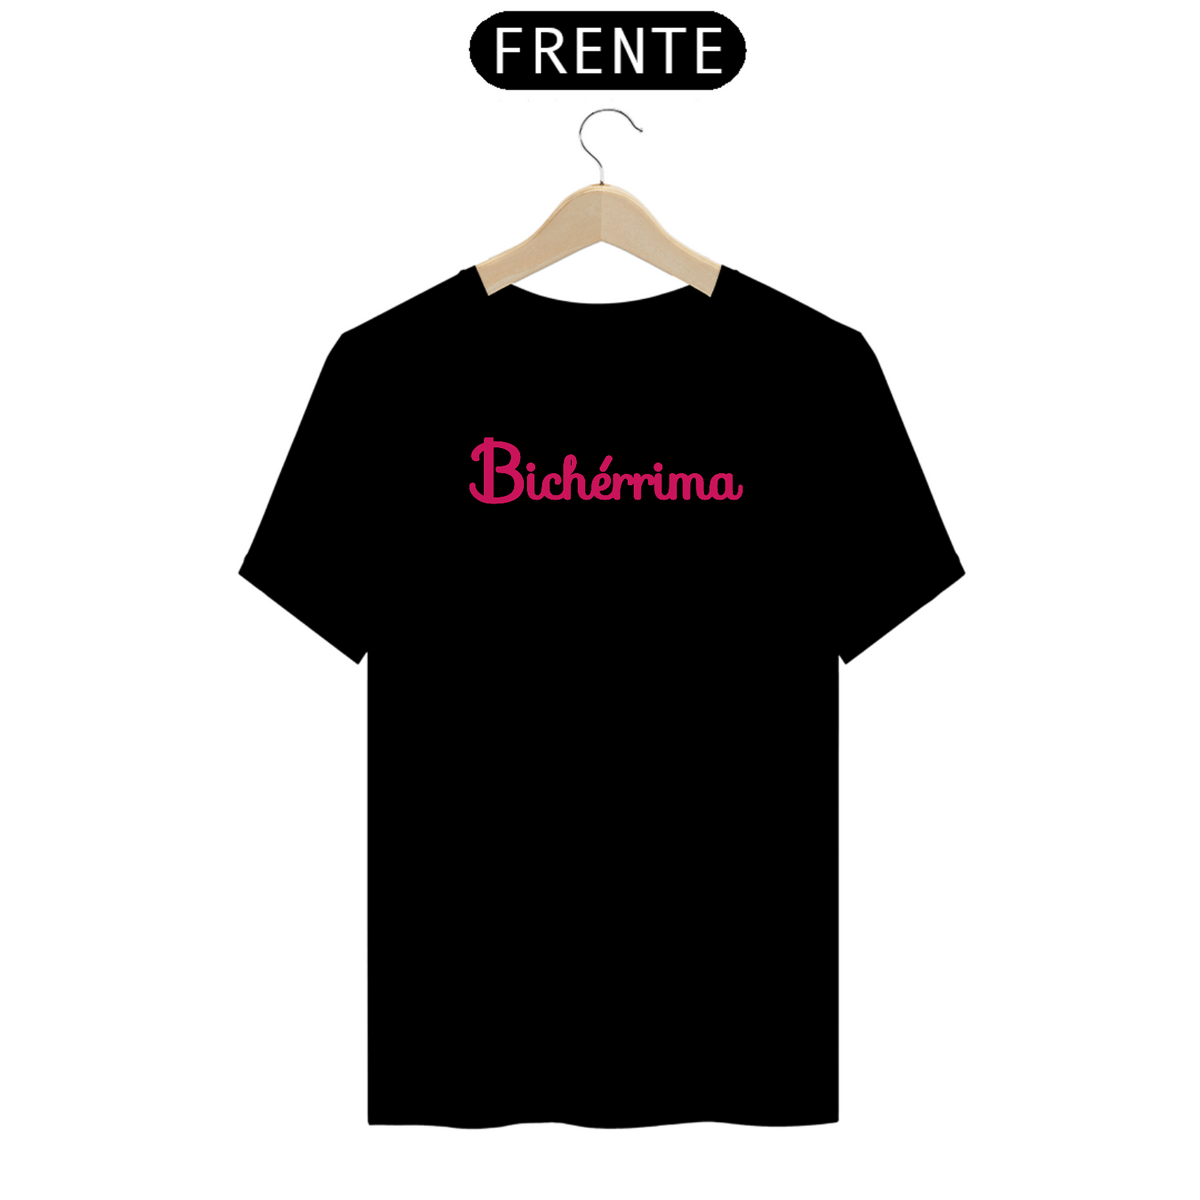 Nome do produto: Camiseta Bichérrima